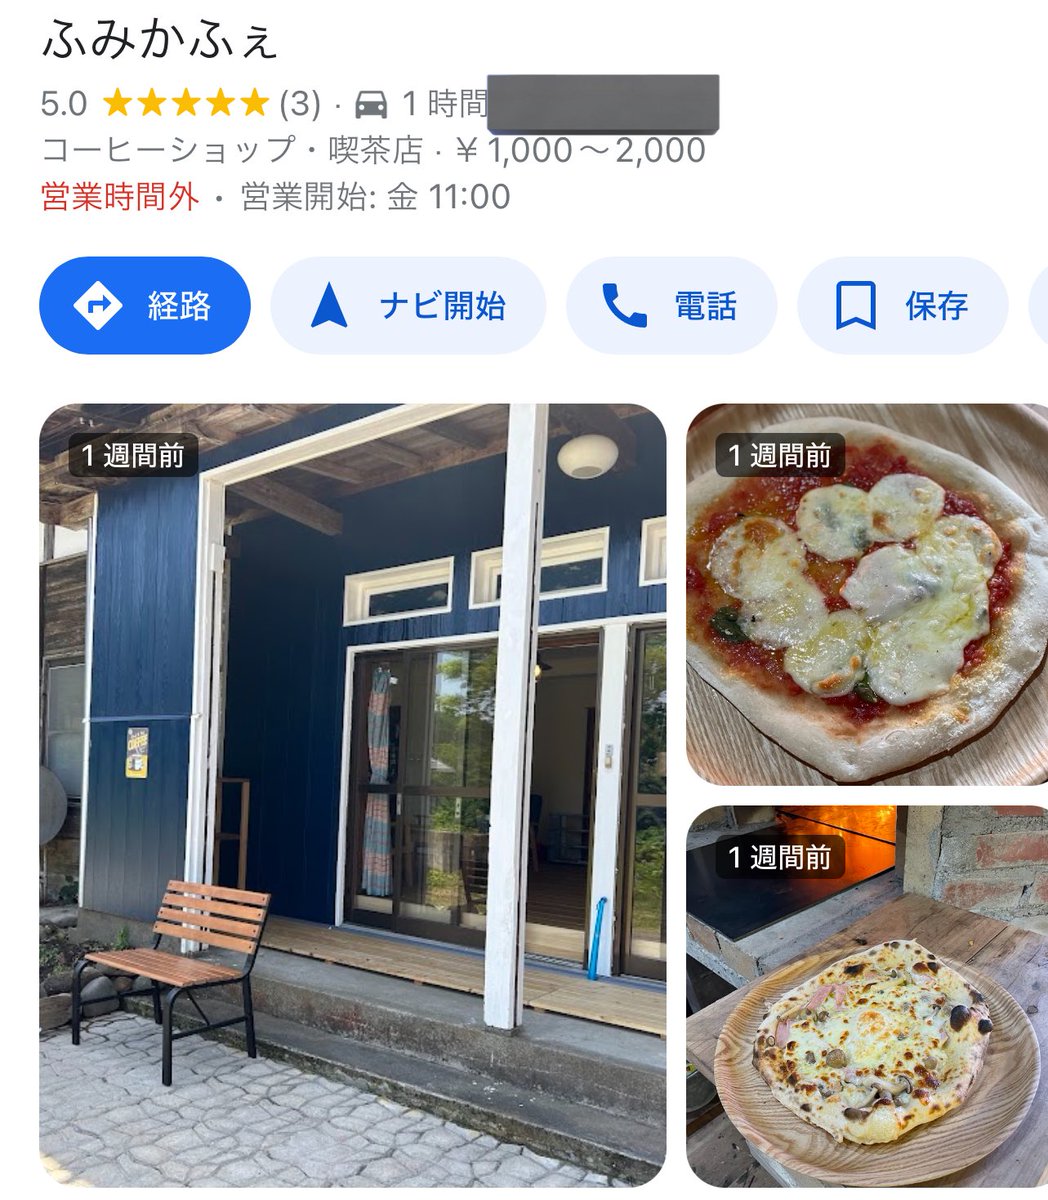 今月、勝手聖地巡礼をしている鷺沢文香Pとしては絶対に行かねばならない名前の店が、しかも長野県内にオープンした様だ。